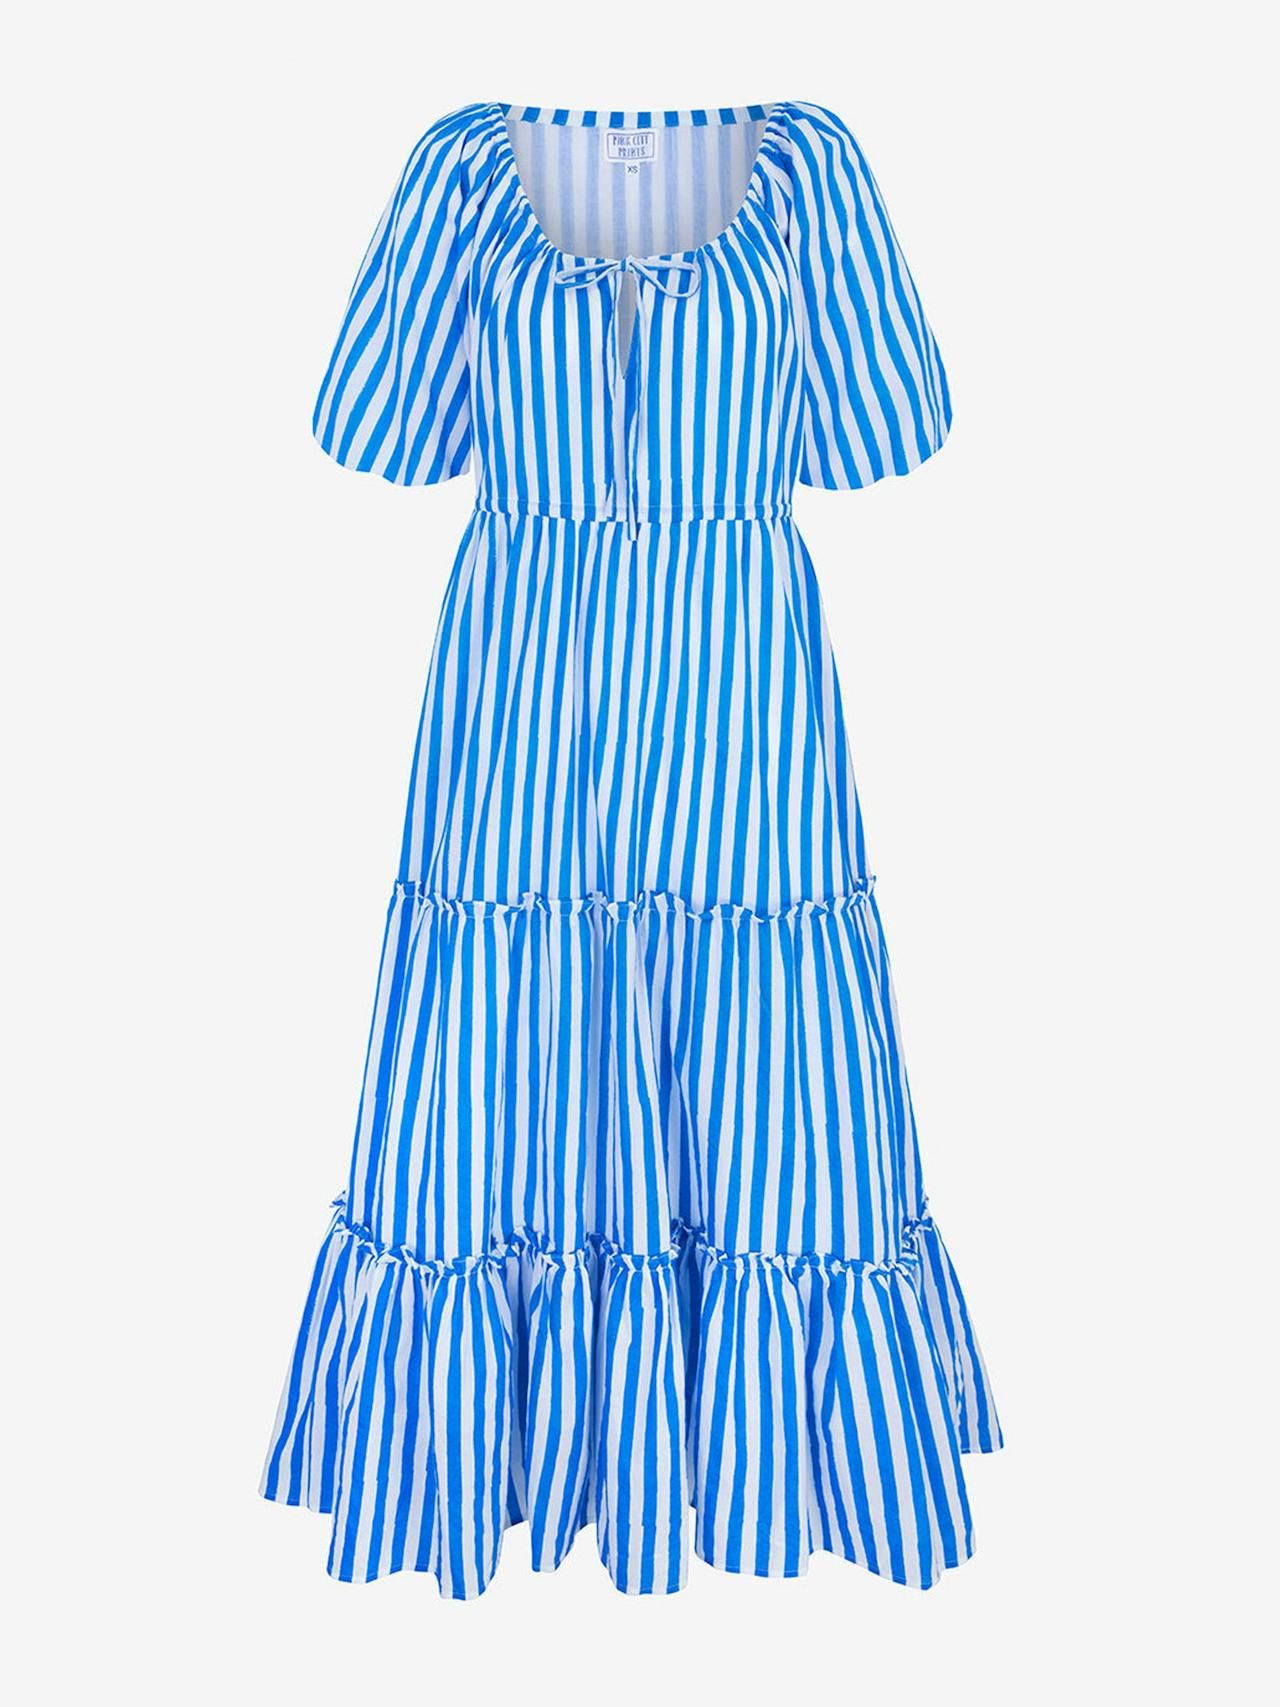 French stripe evie dress